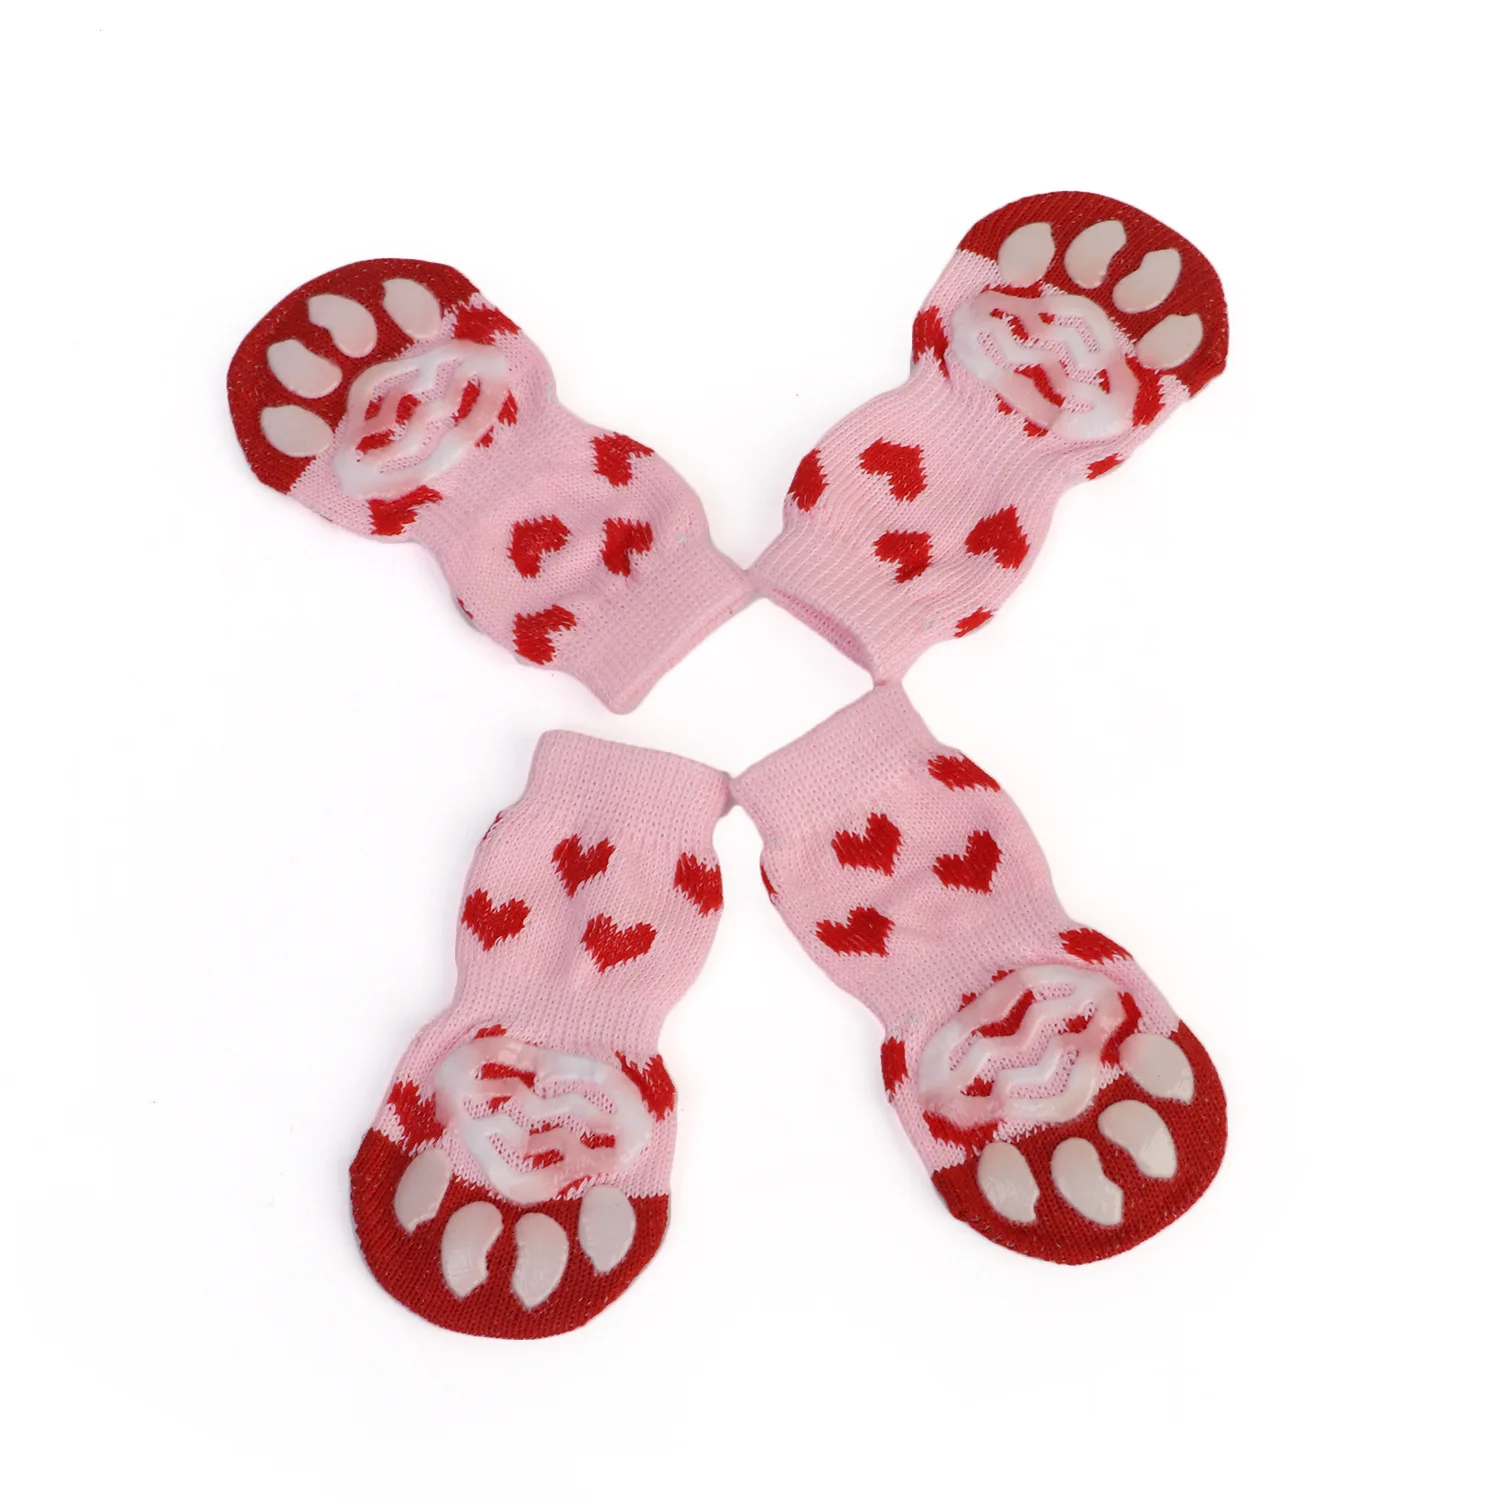 Носки для домашних животных носки для кошек носки для собак для домашних животных милые носки теплые носки для домашних животных